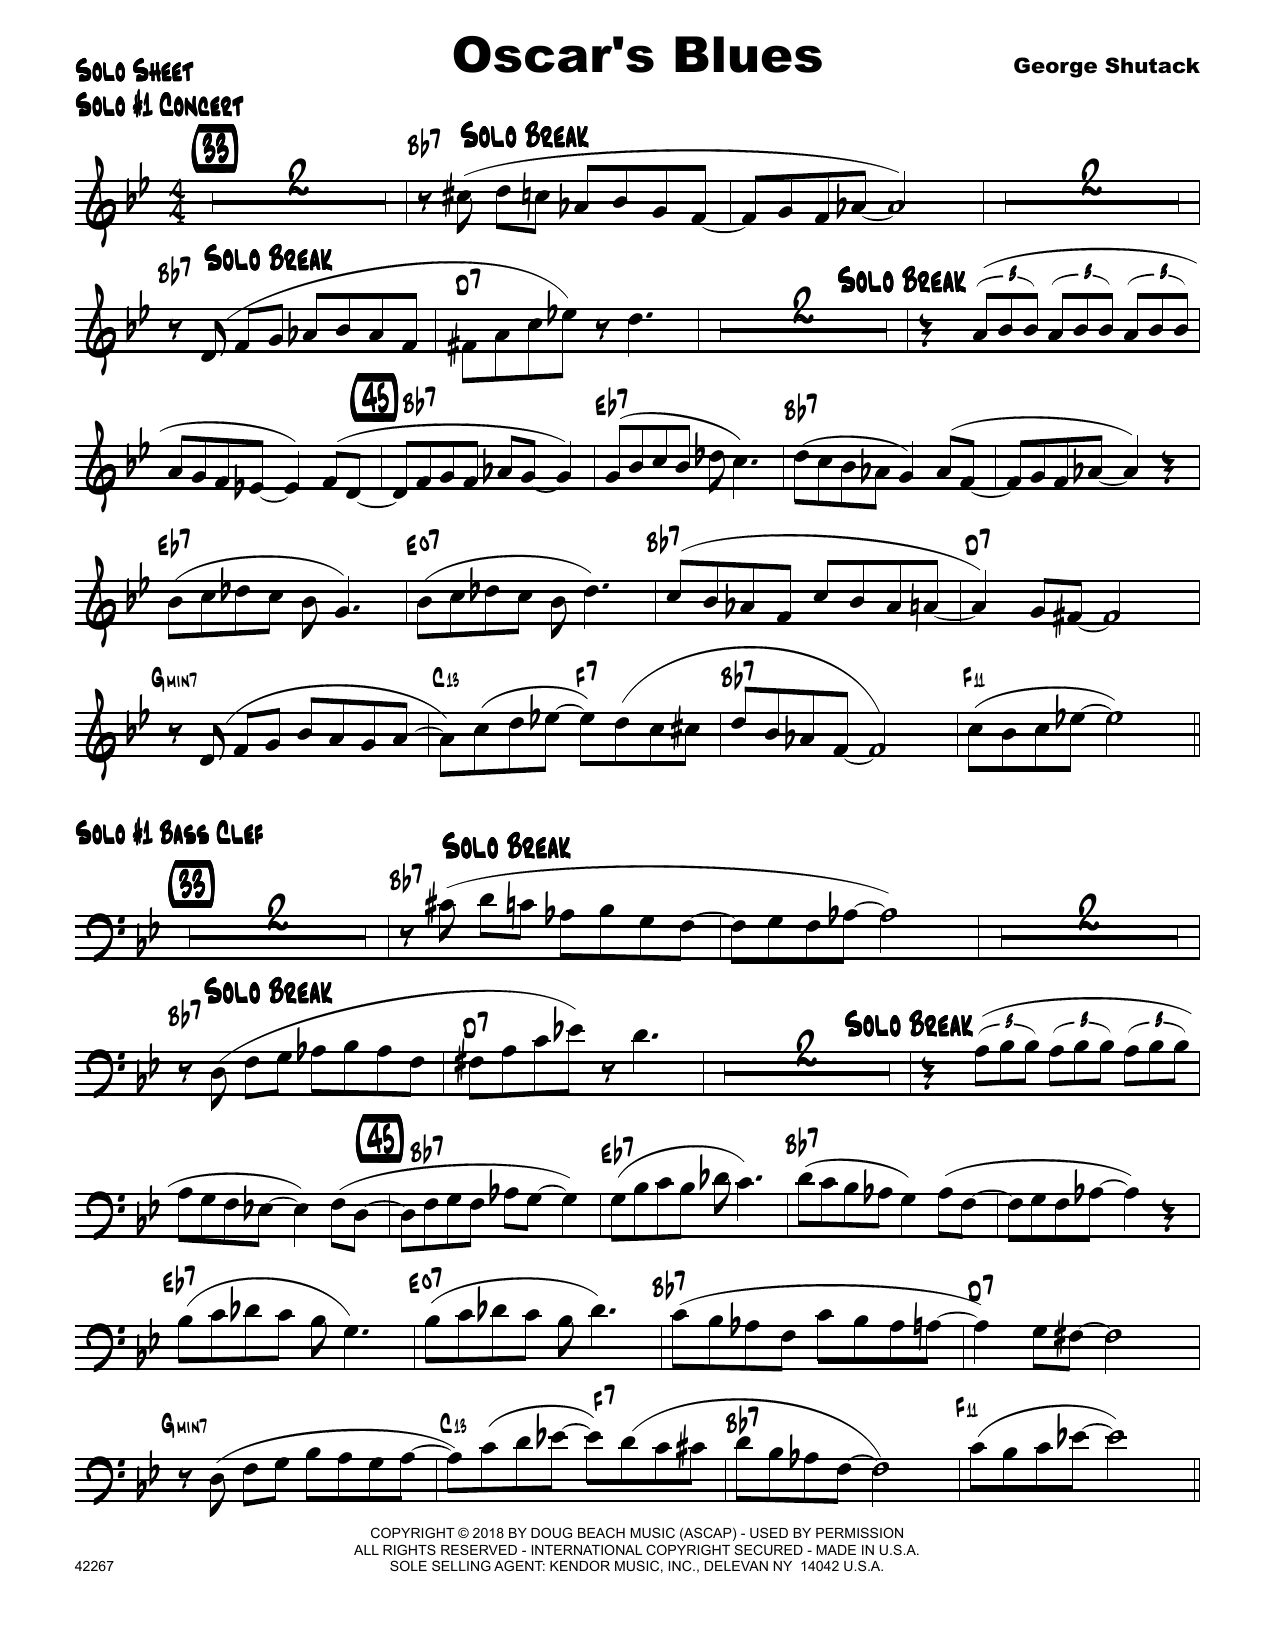 Download George Shutack Oscar's Blues - Solo Sheet Sheet Music